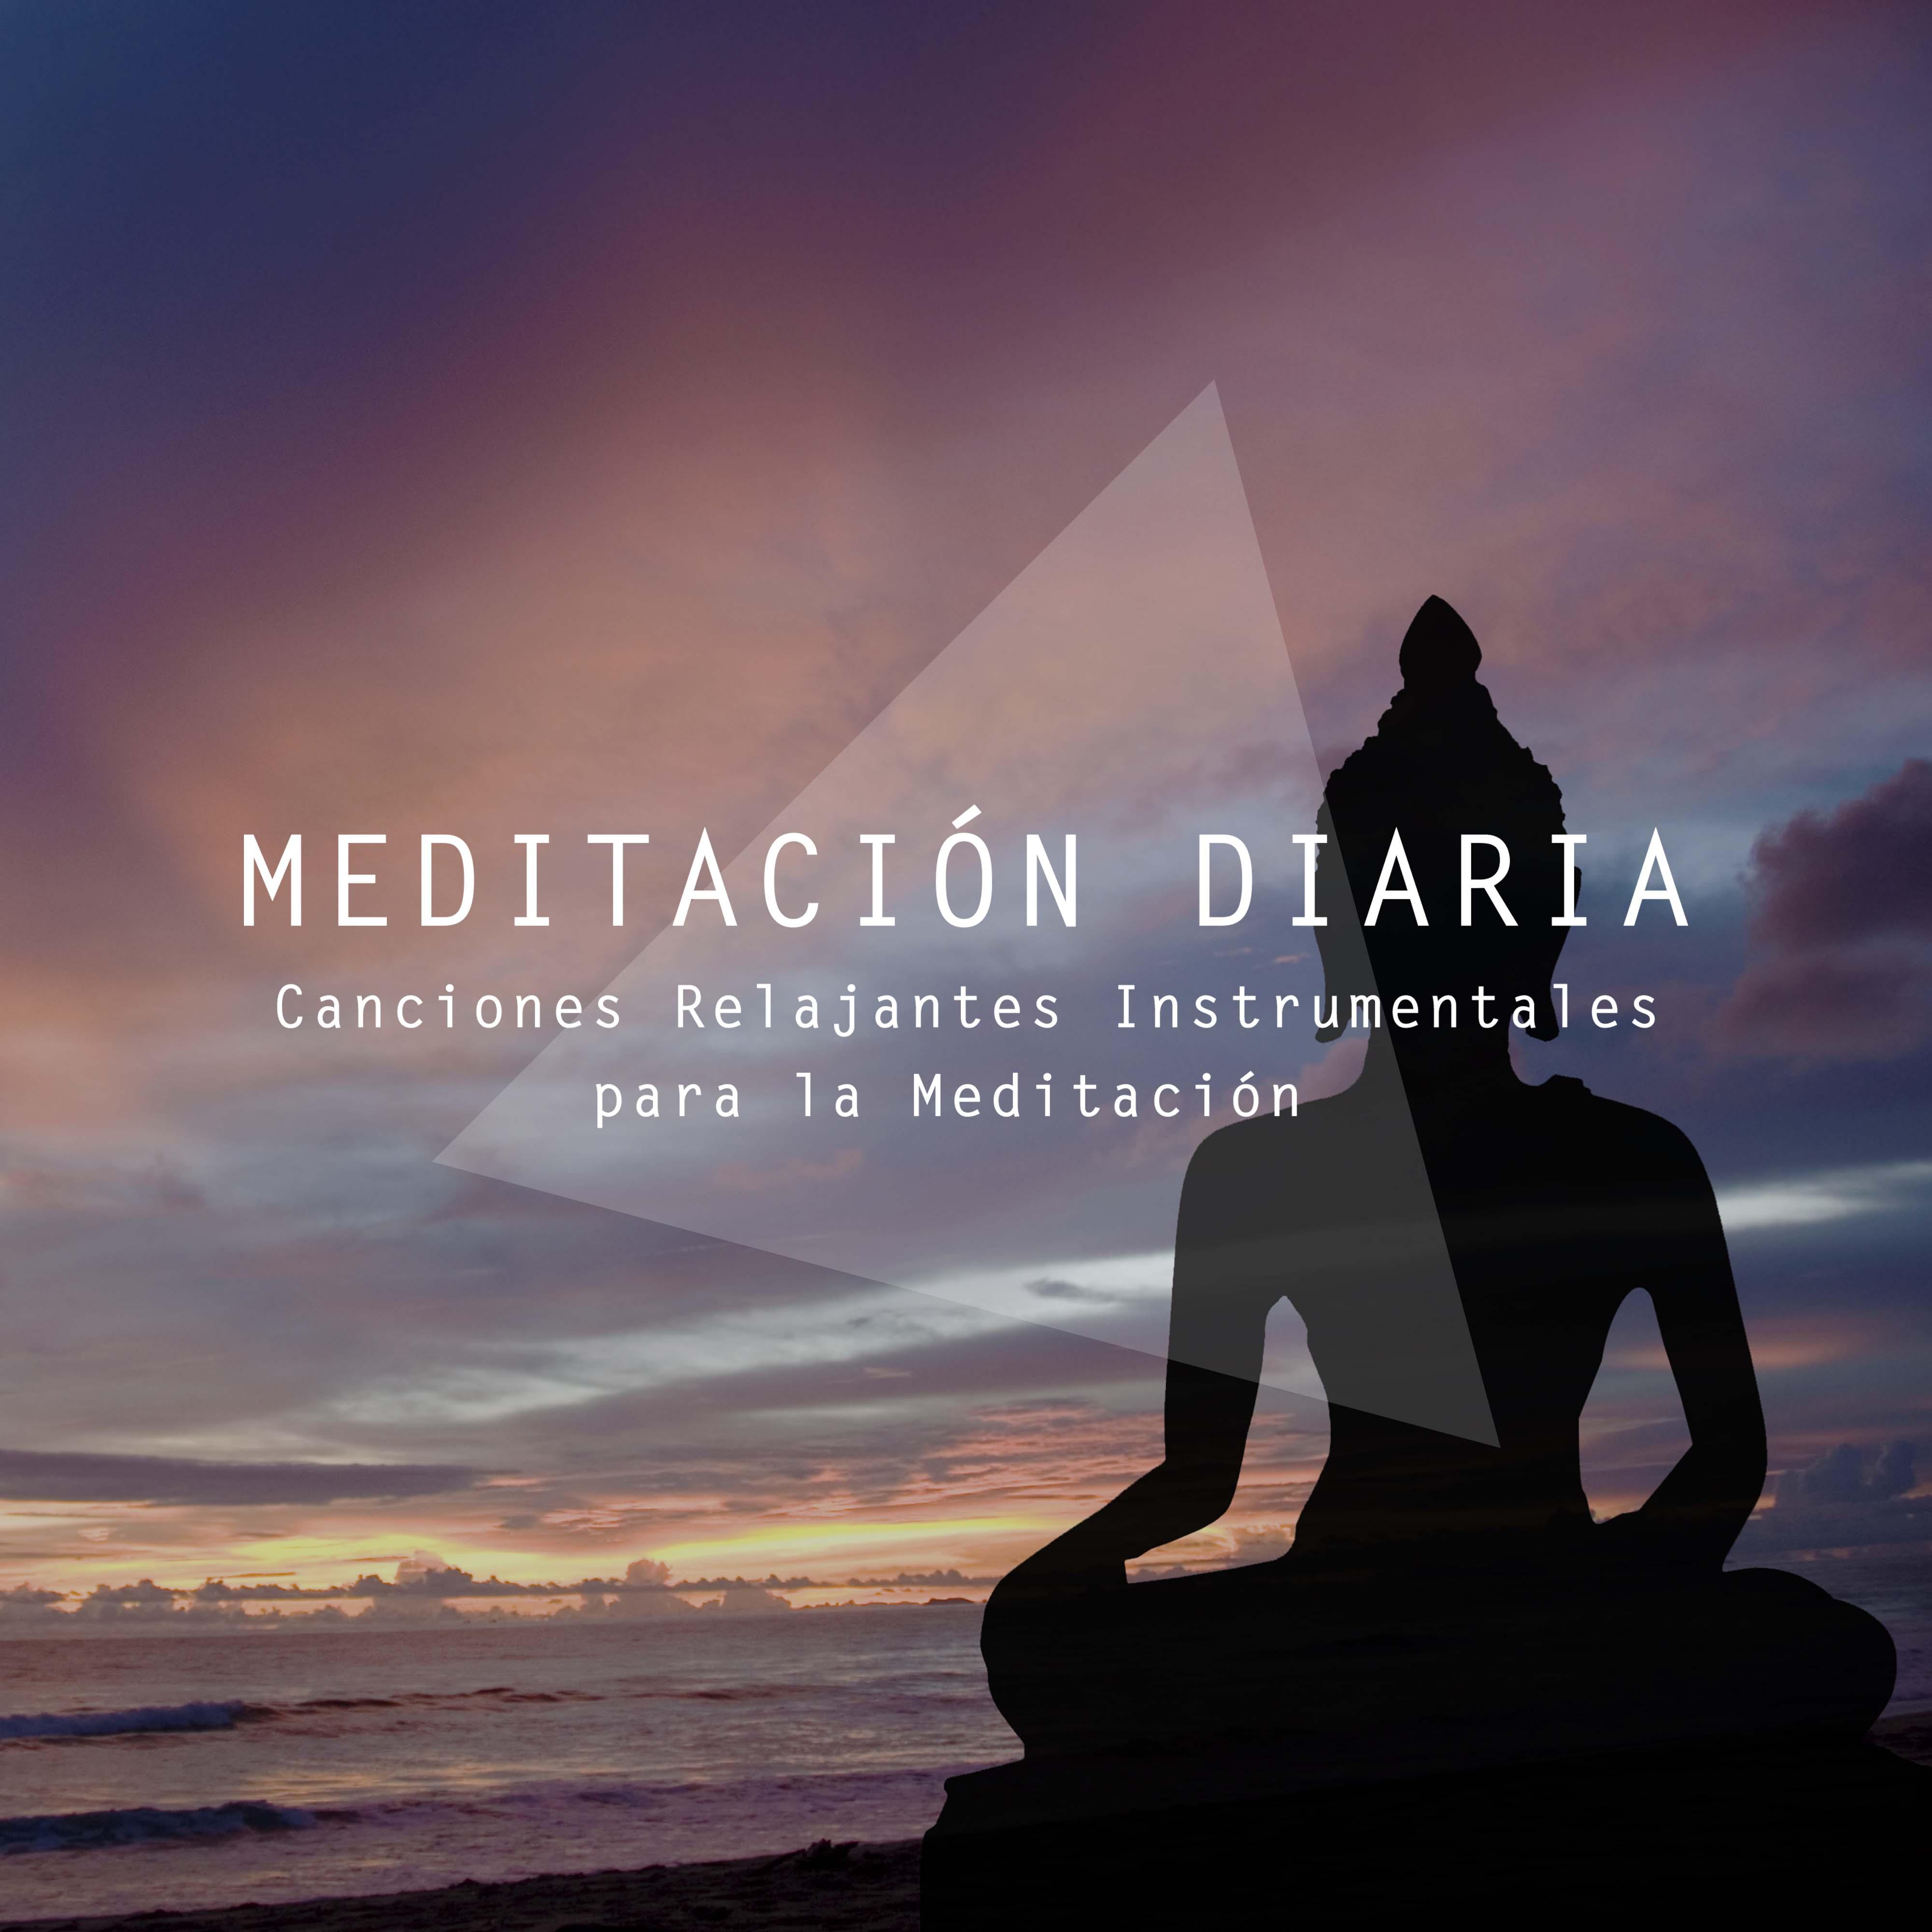 Meditación Diaria - Canciones Relajantes Instrumentales para la Meditación